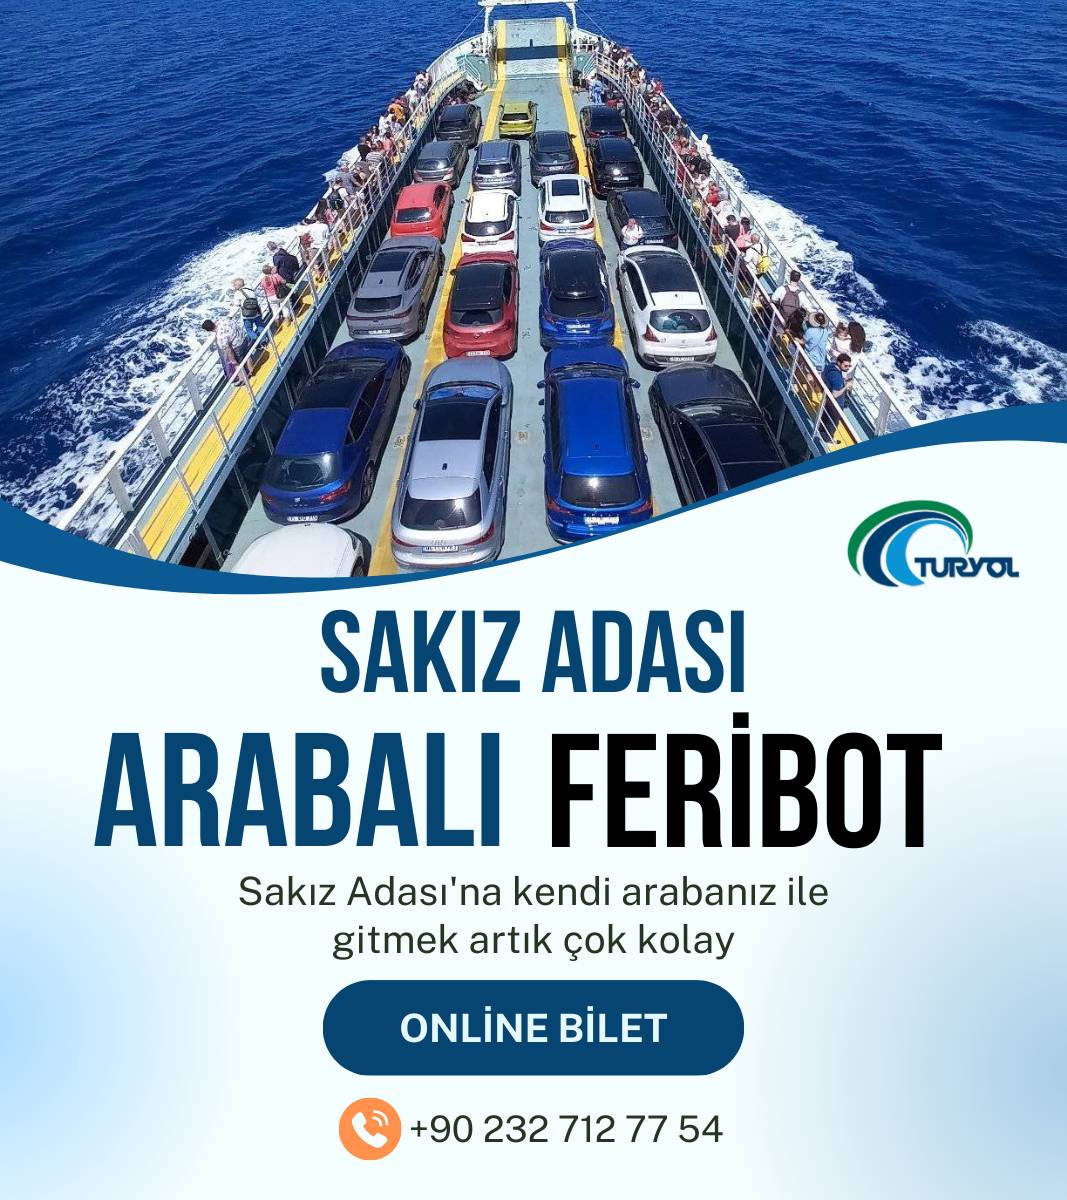 Turyol sakız adası arabalı feribot bileti